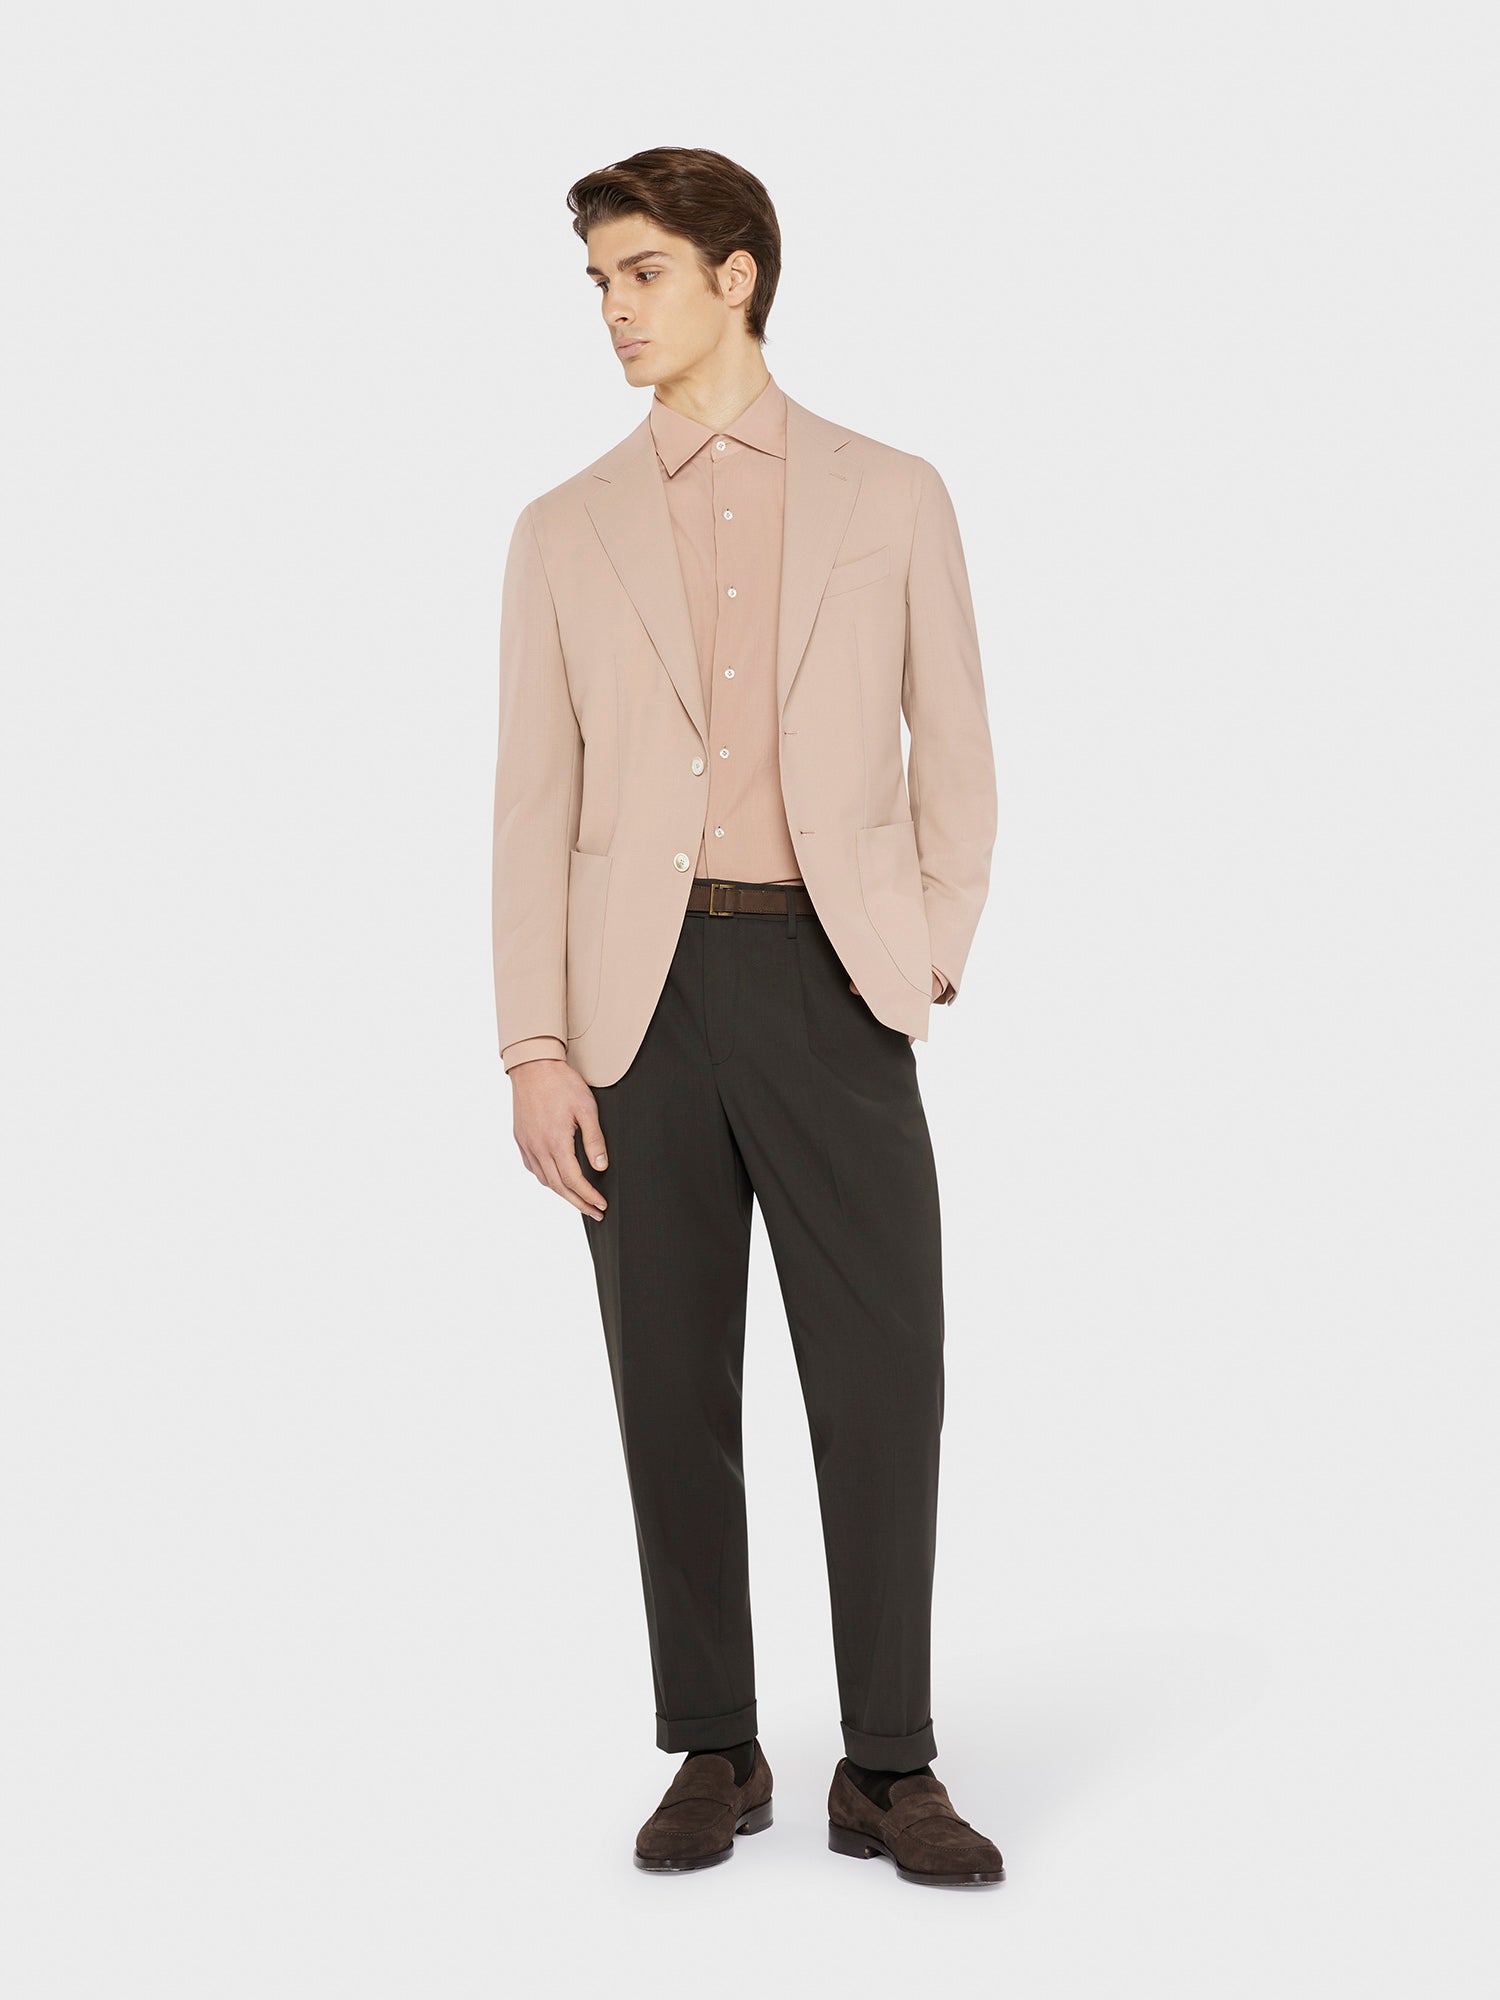 Caruso Menswear Abbigliamento Uomo Camicia slim fit in cotone rosa antico total look